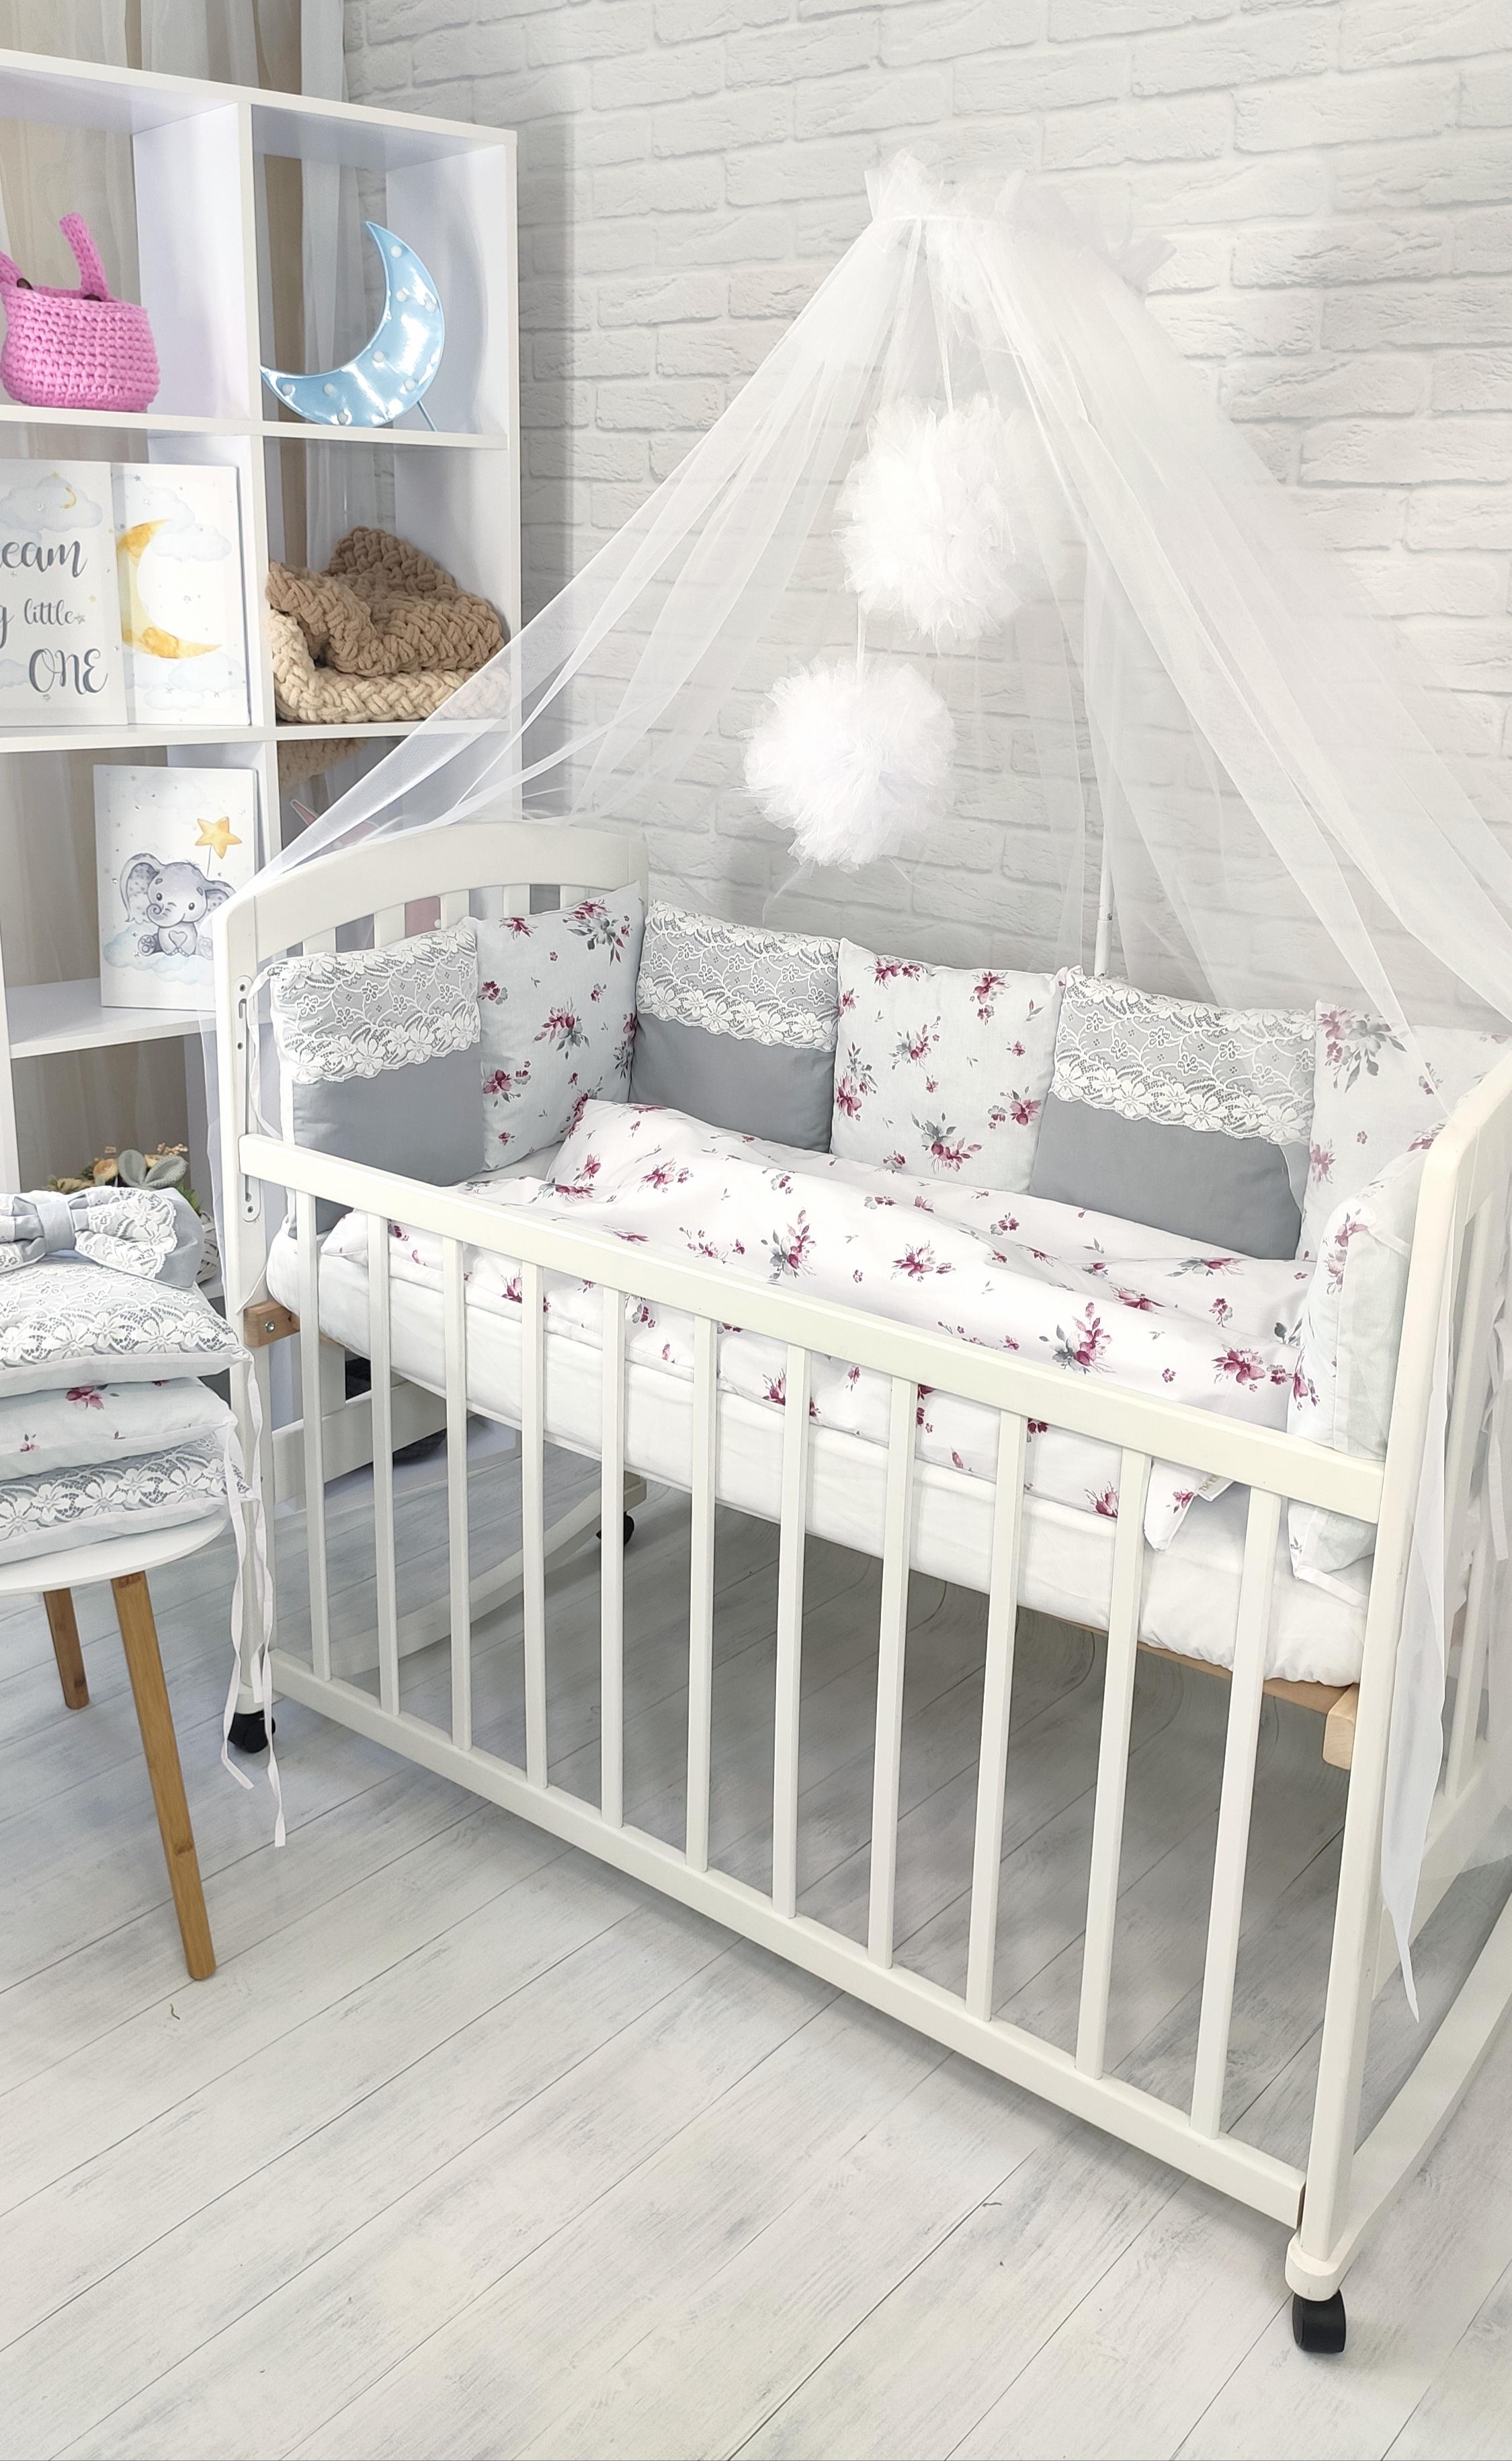 Комплекты белья в детскую кроватку | Piccolo -товары для Новорожденных